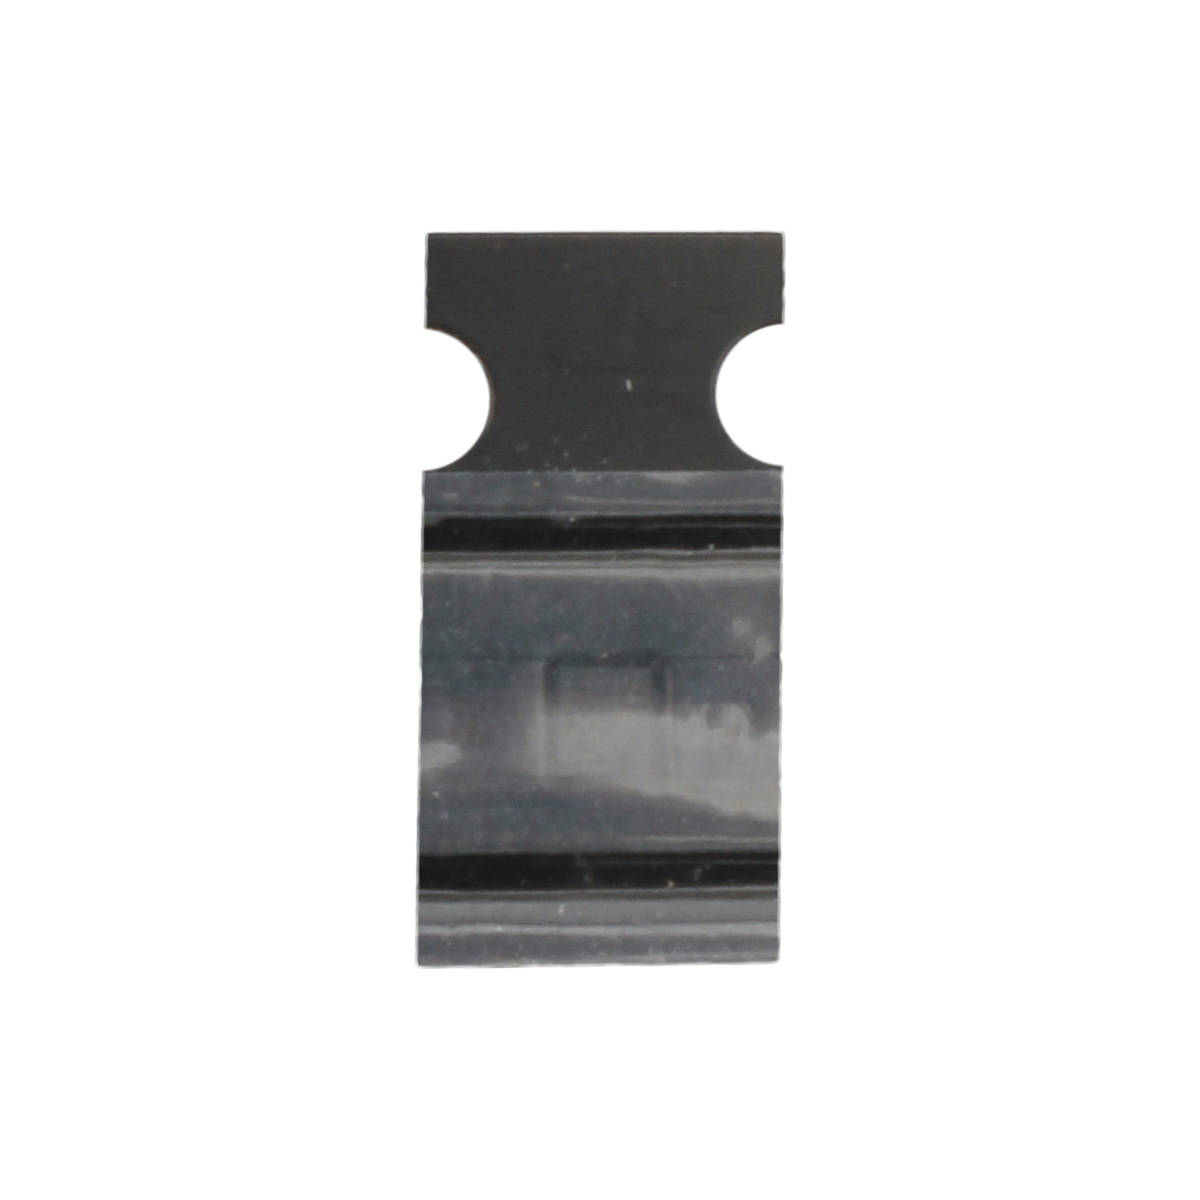 IC Chip für Fingerabdrucksensor kompatibel mit iPhone 7 Plus